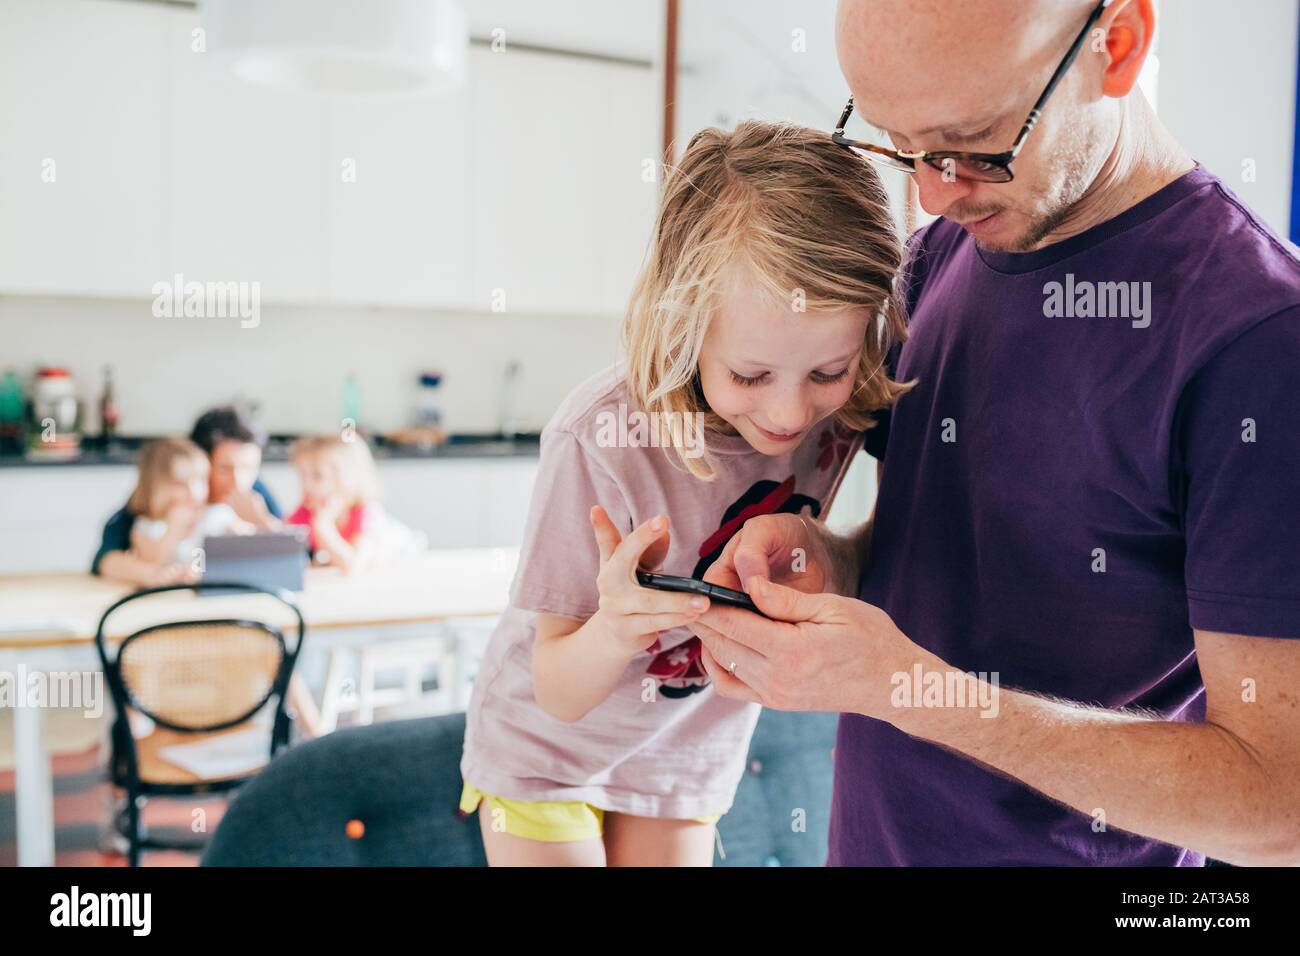 Vater und Tochter im Innenbereich mit Smartphone - Lernen, Unterhaltung, Unterrichtskonzept Stockfoto